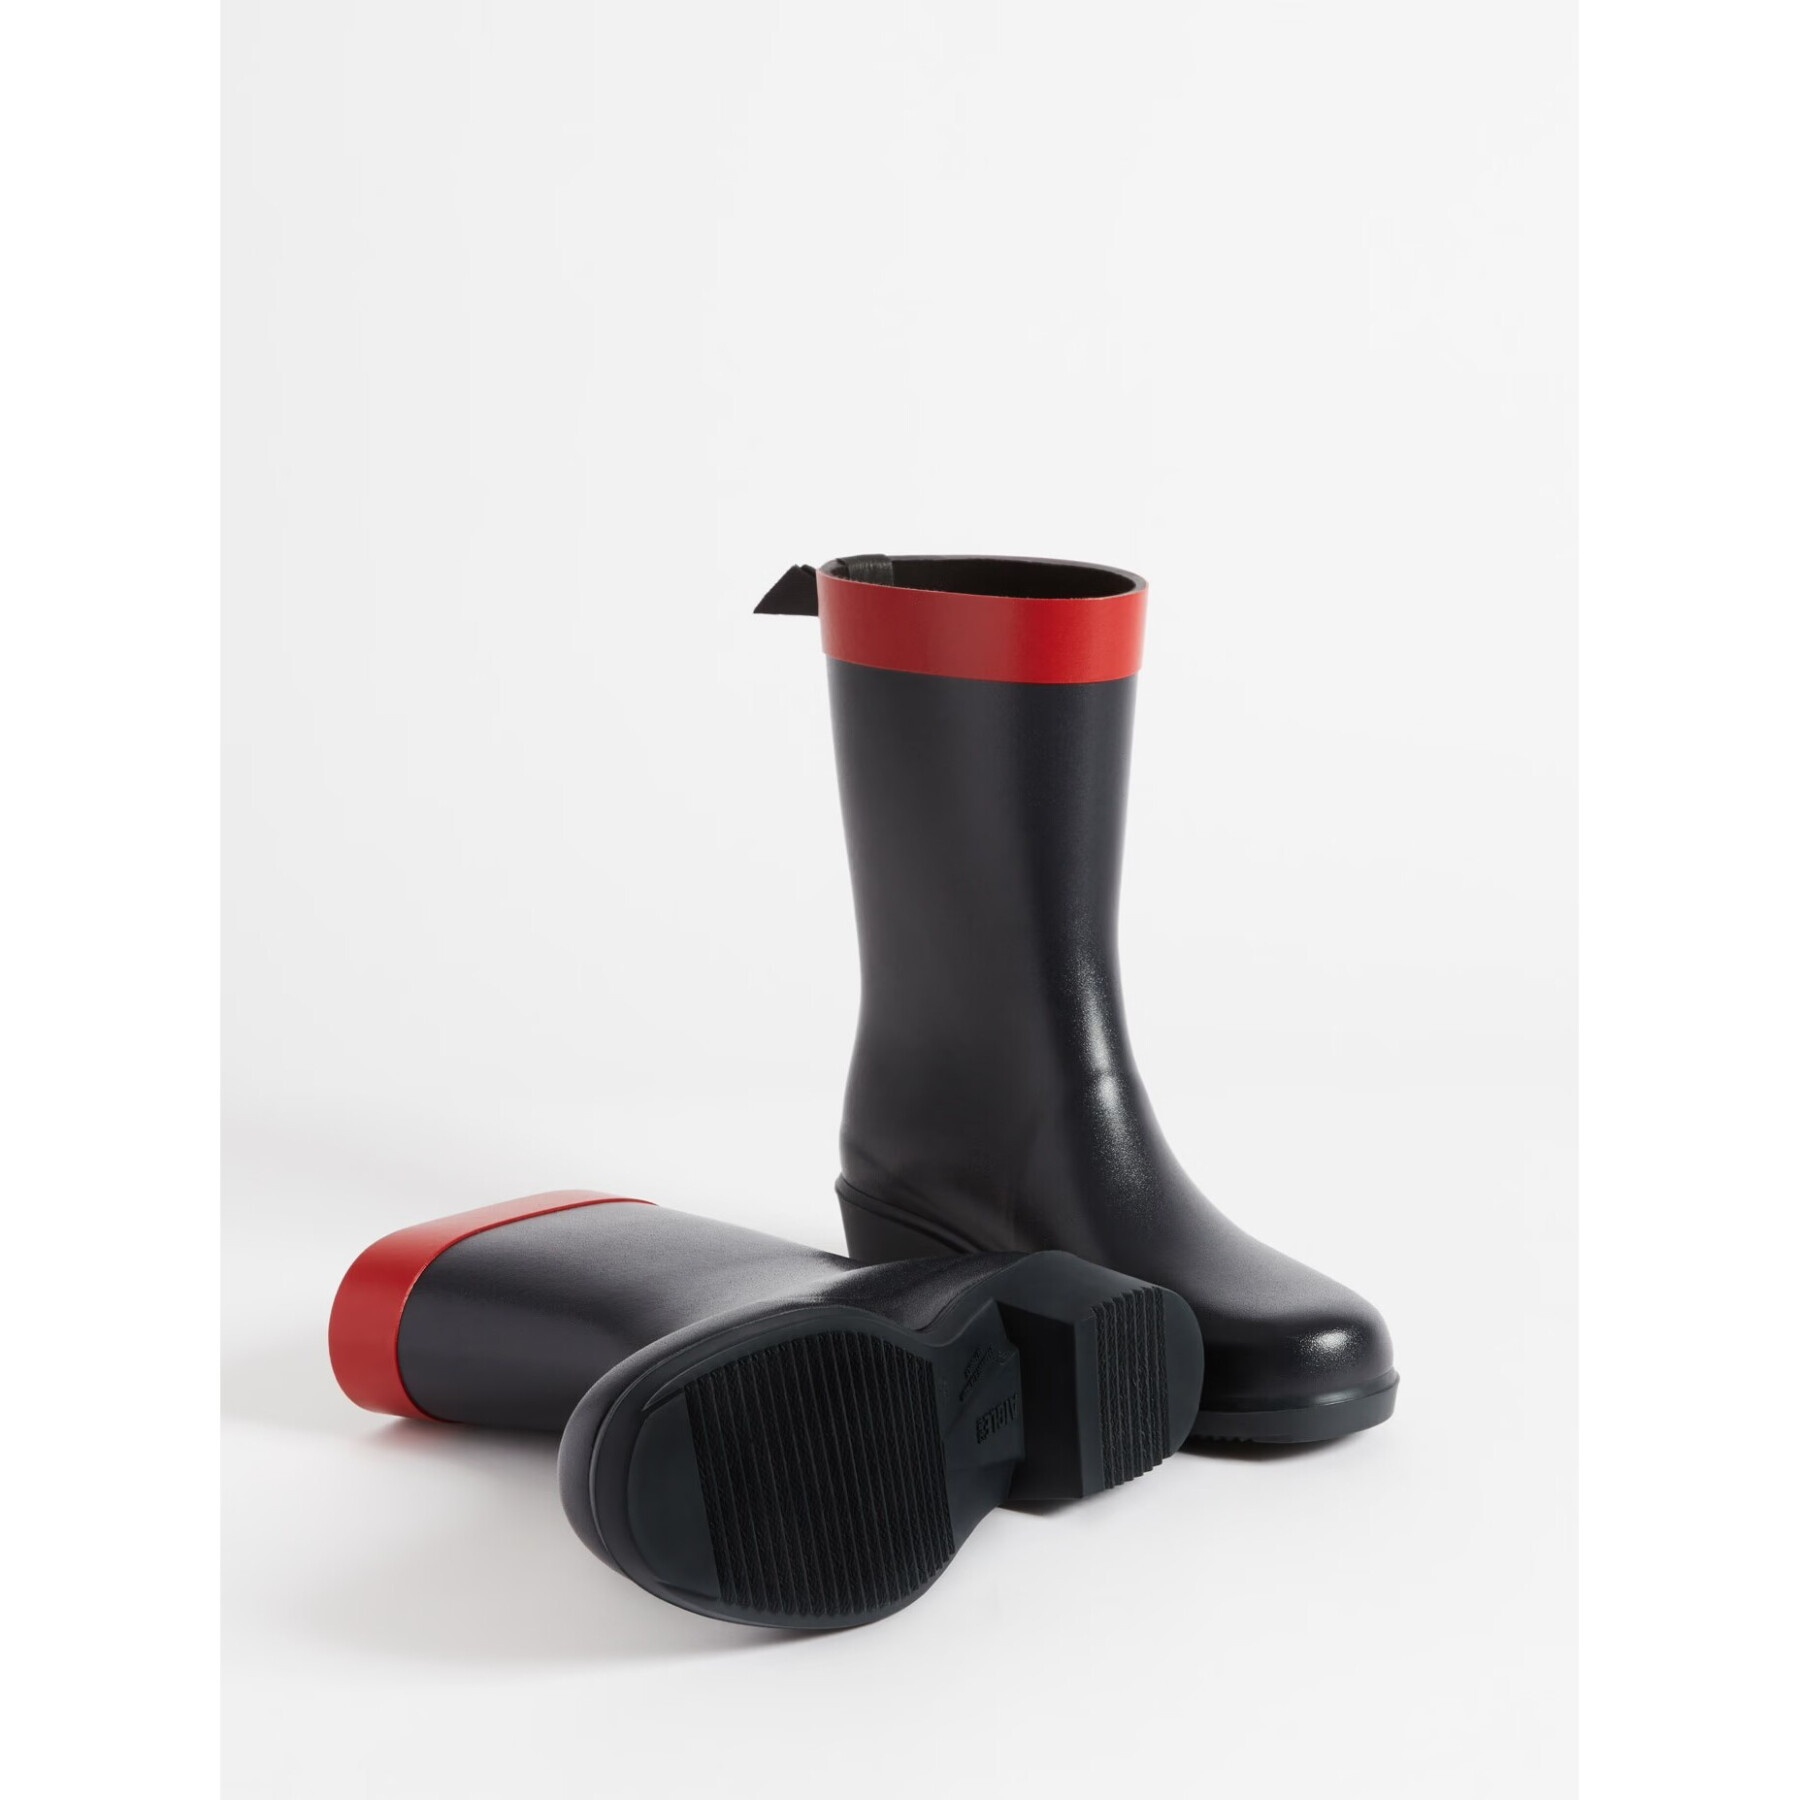 Women's rain boots Aigle Myrica Mid